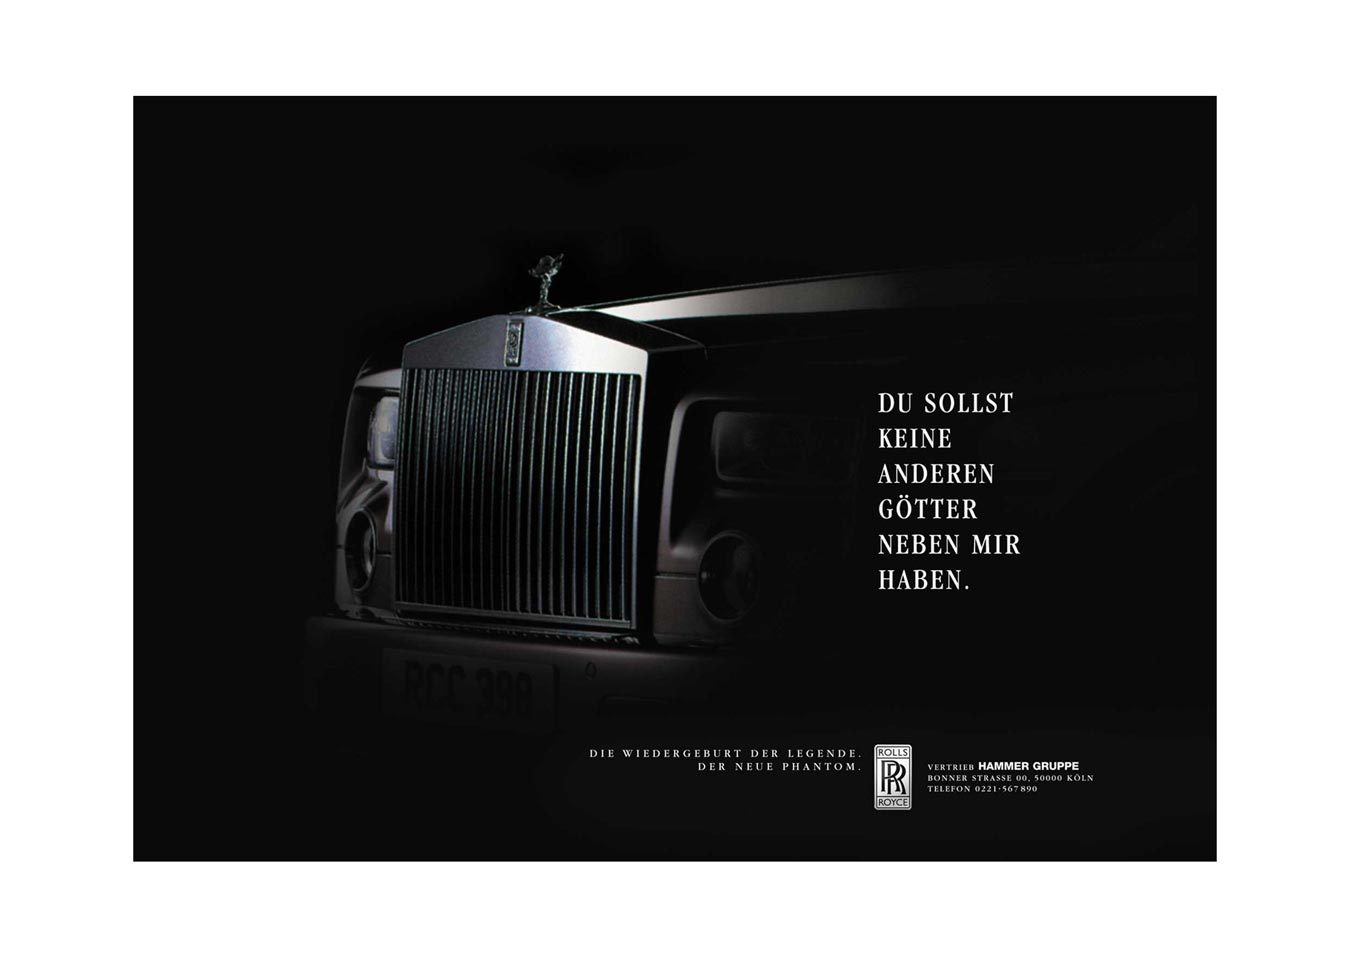 GROSSFLÄCHENPLAKATE zur Einführung des neuen Phantom von Rolls-Royce